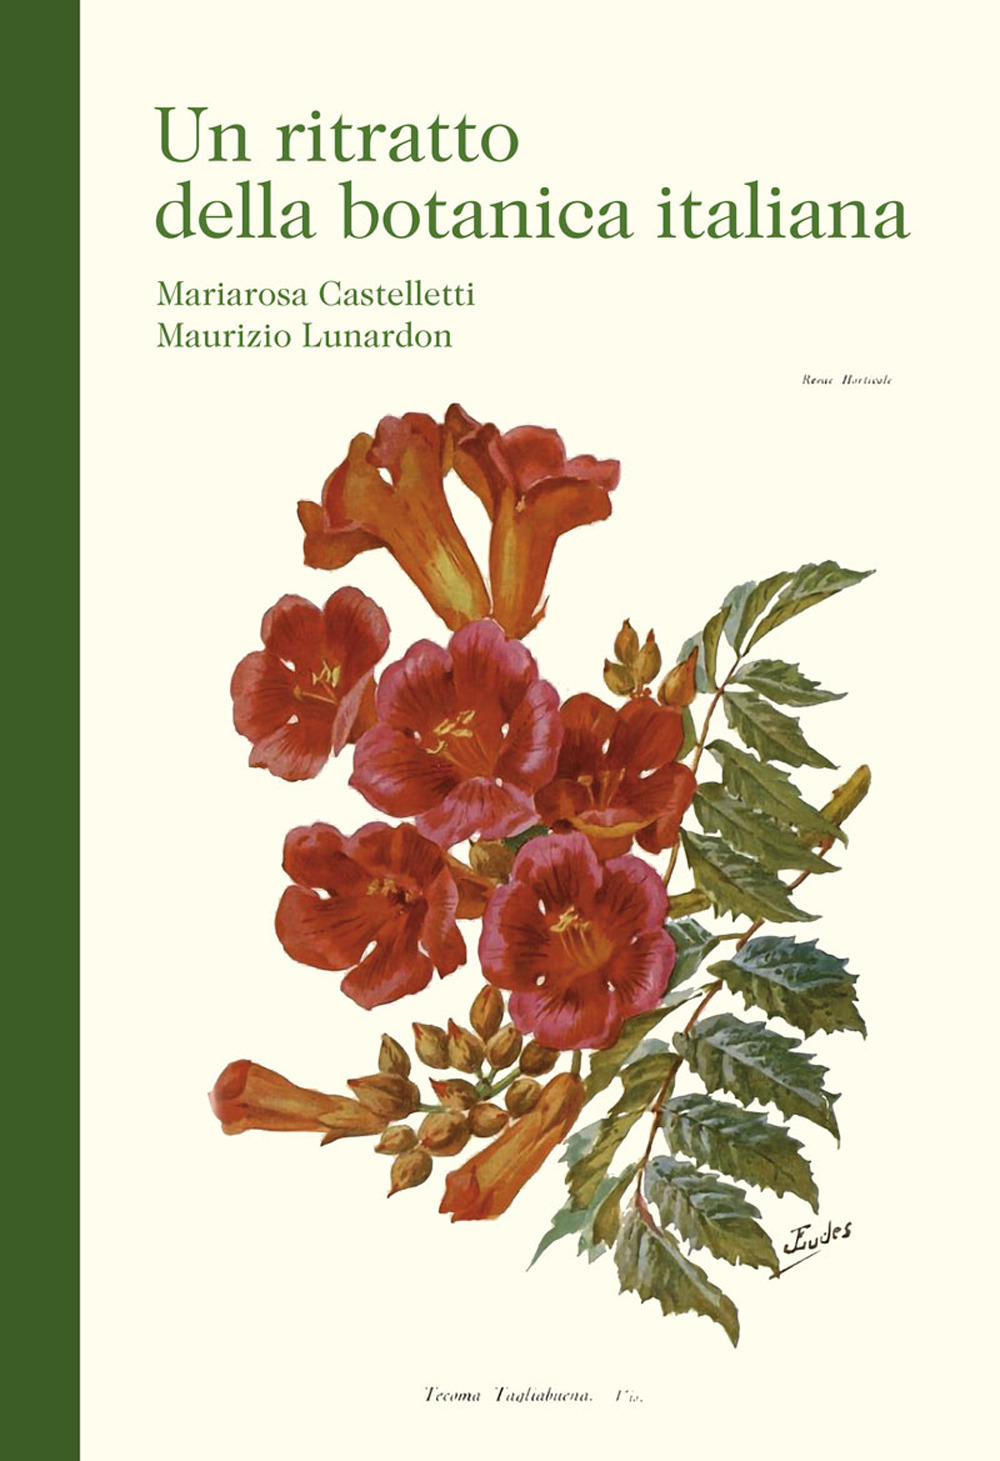 Un ritratto della botanica italiana